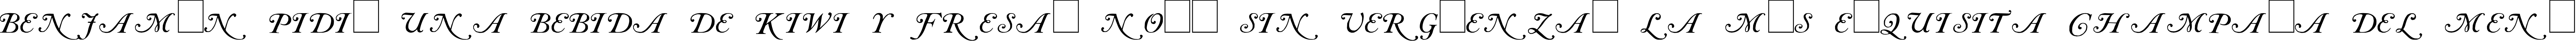 Пример написания шрифтом Caslon Initials текста на испанском